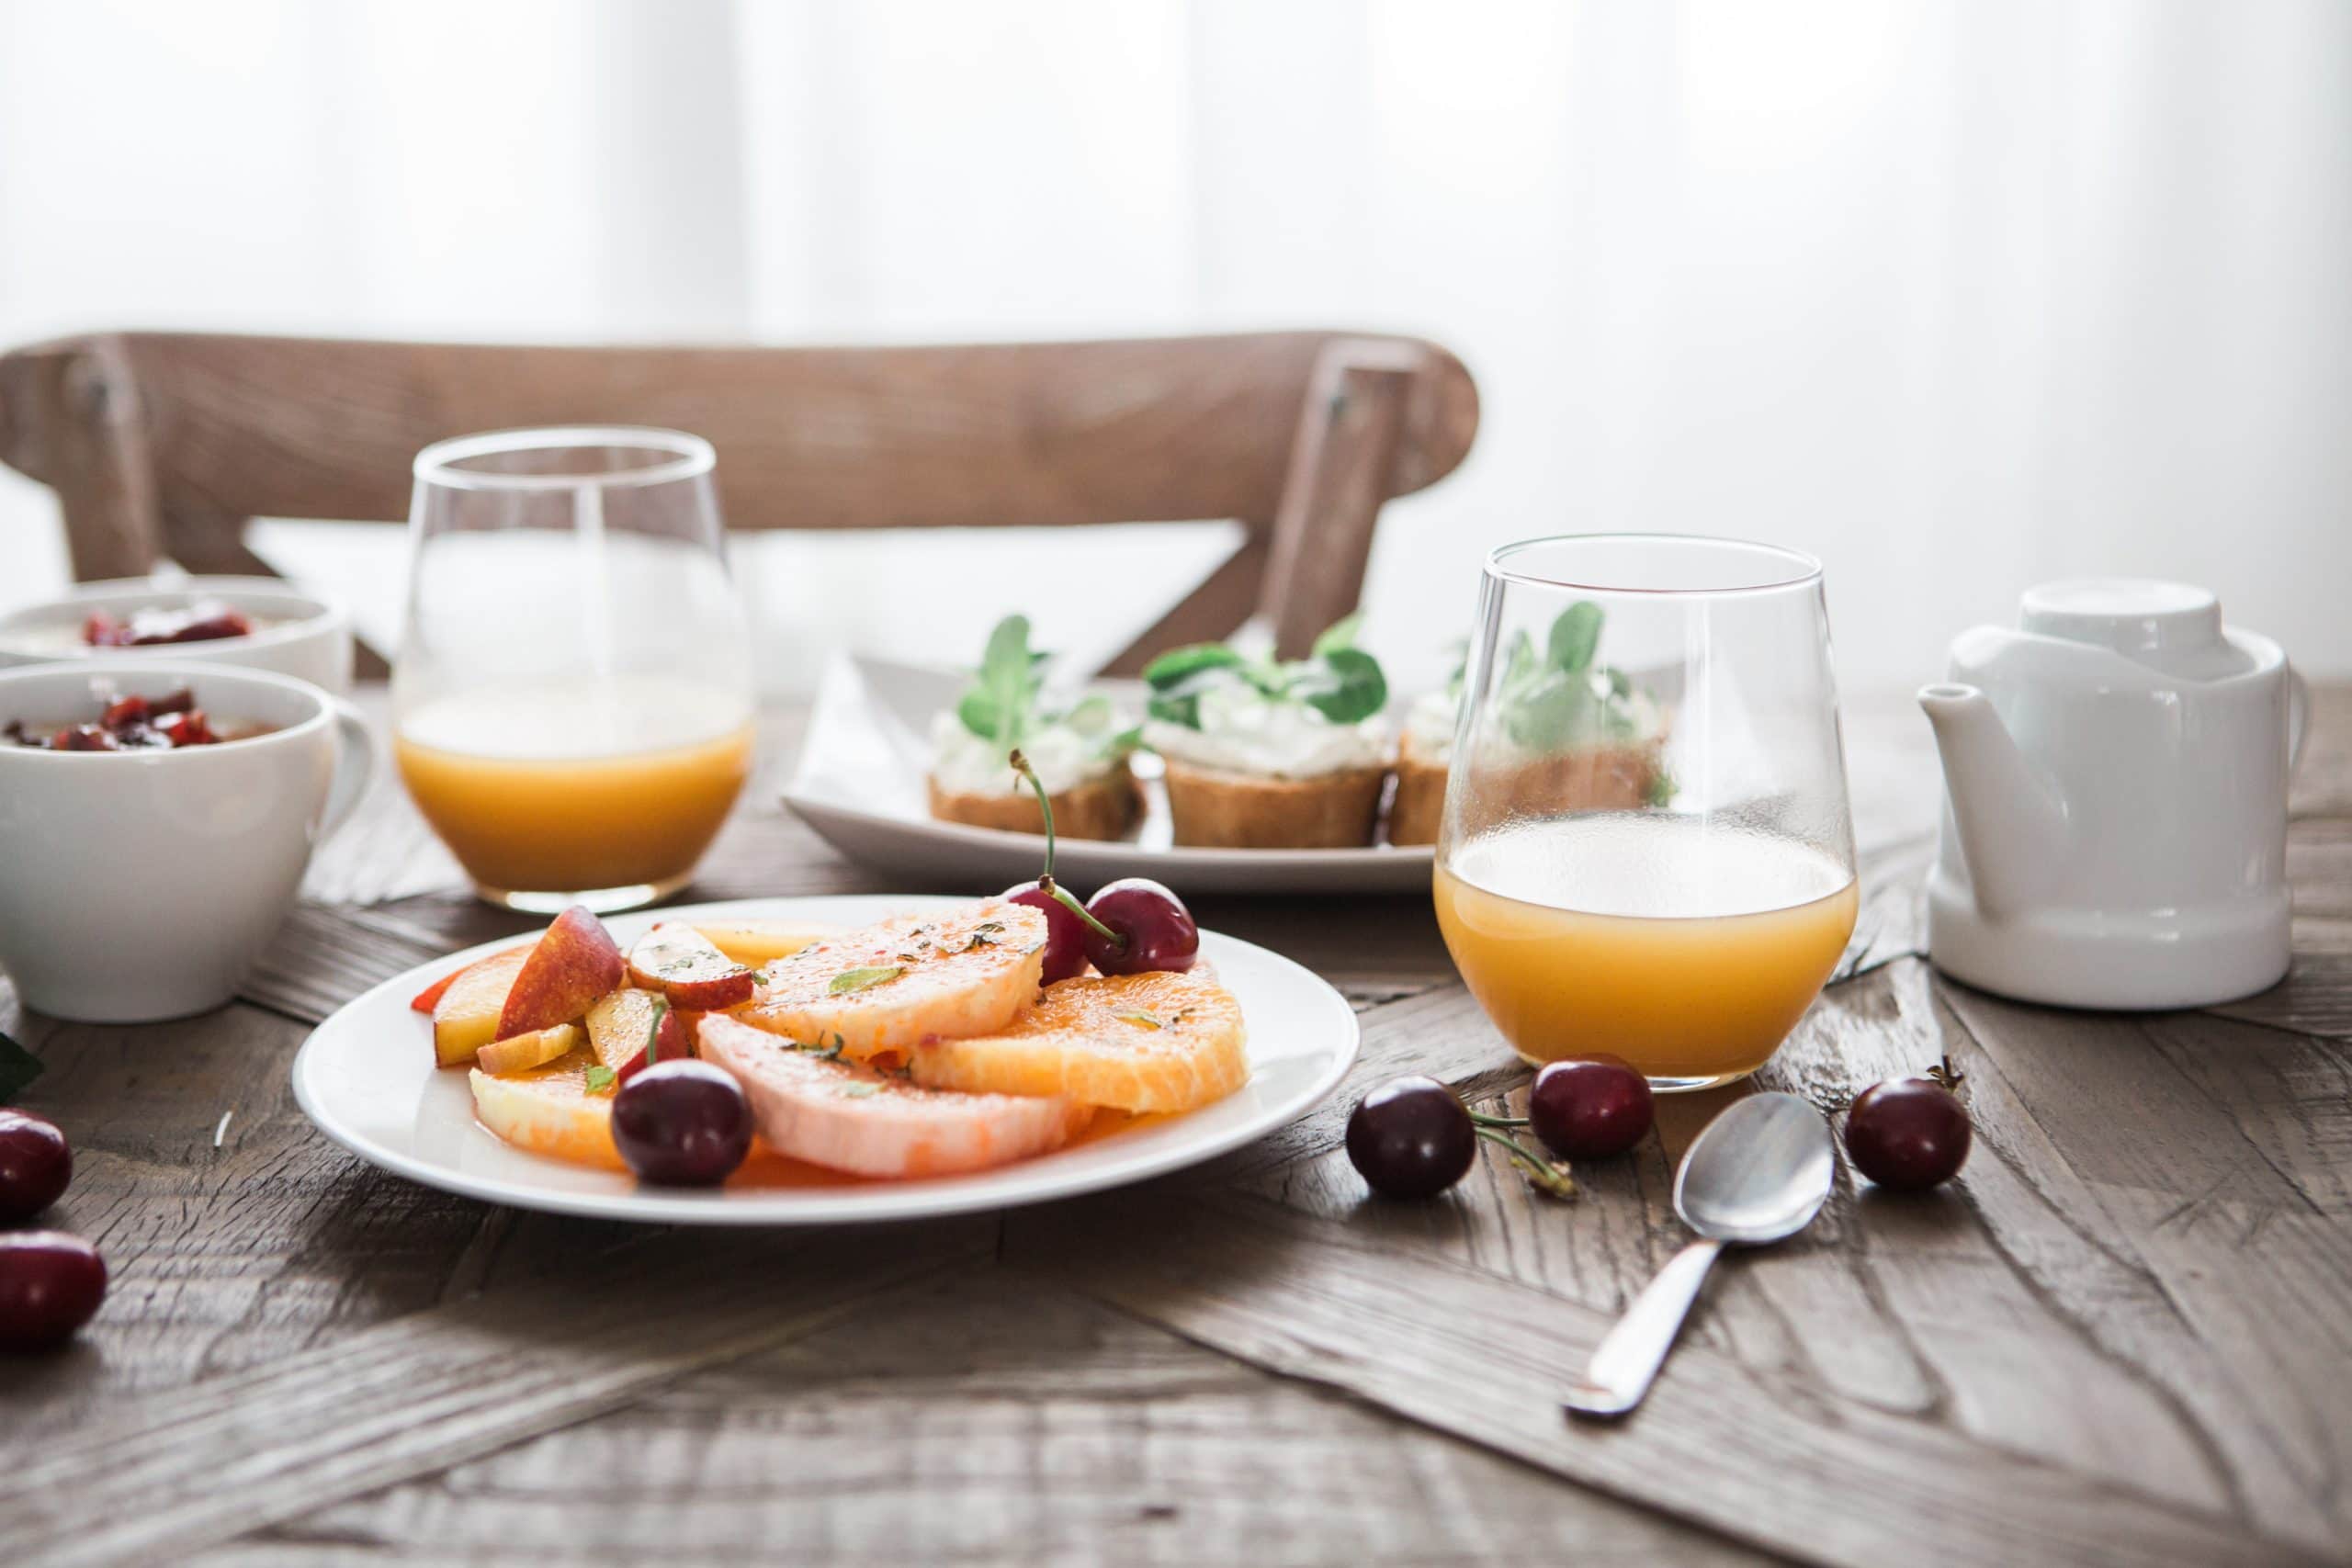 raňajky - brooke lark IDTEXXXfS44 unsplash scaled - Sú raňajky naozaj najdôležitejším jedlom dňa?